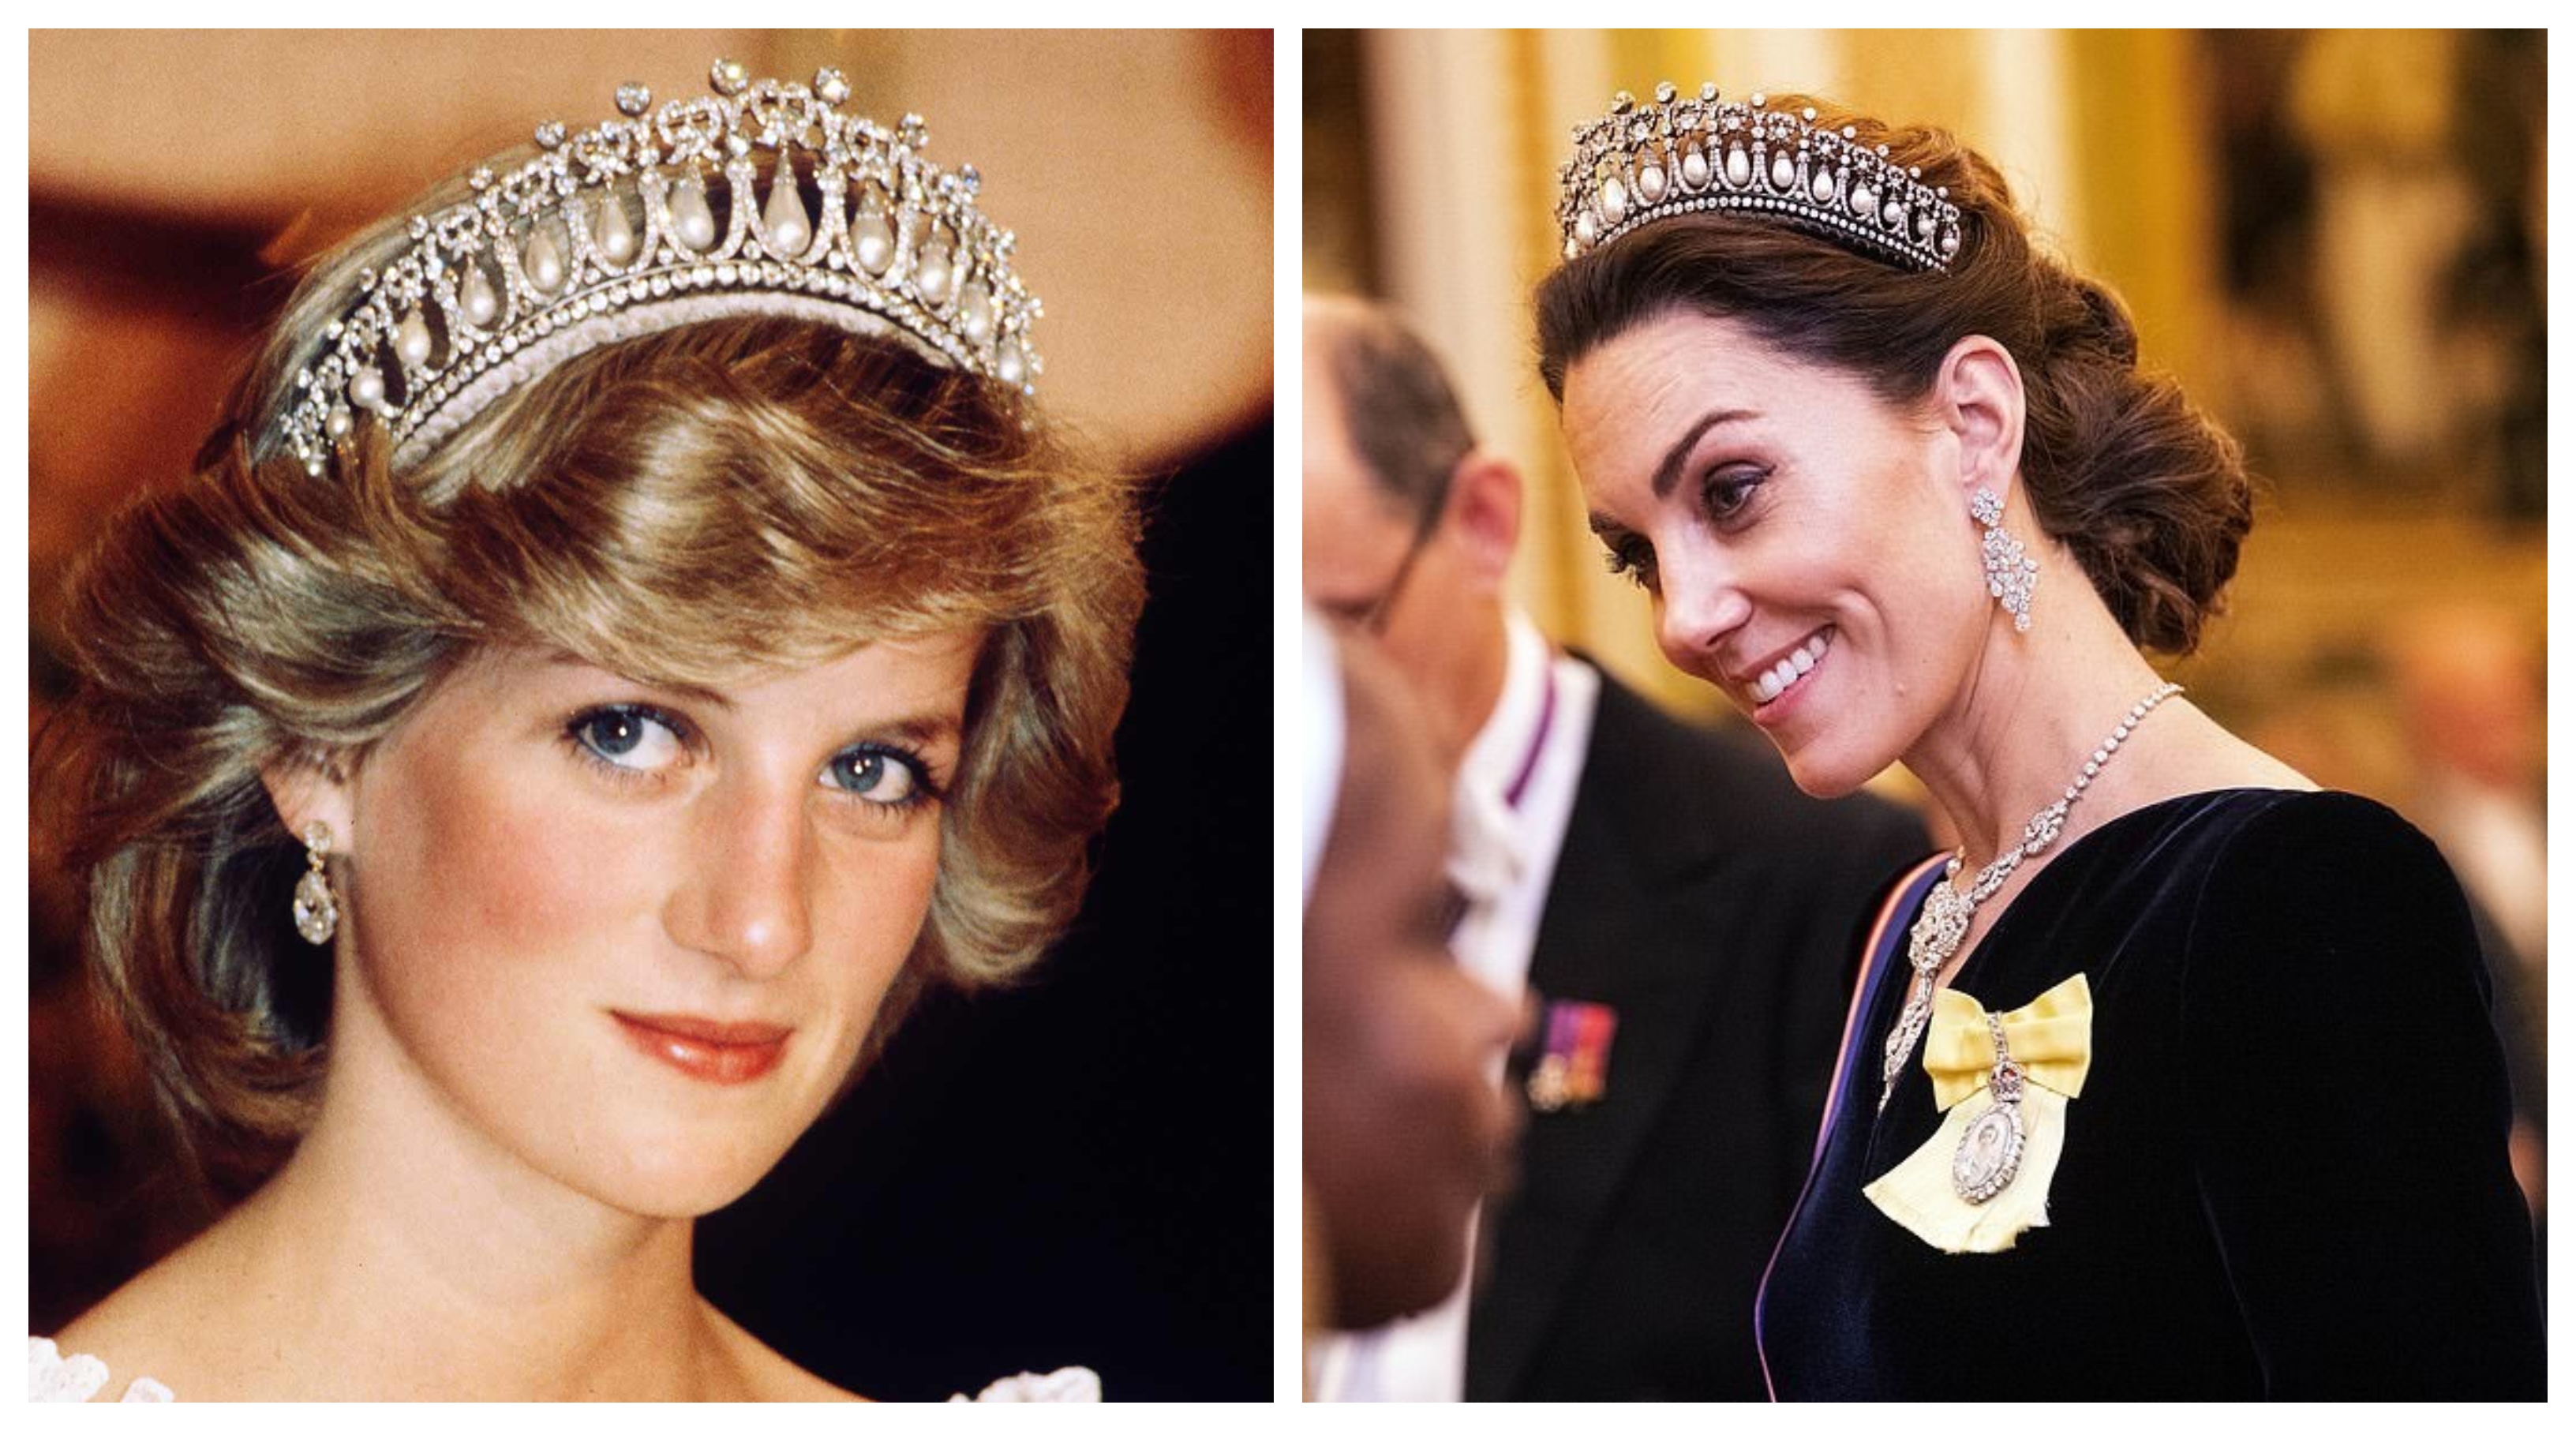 كيت ميدلتون تتألق بـ"تاج" الأميرة ديانا بحفل الدبلوماسيين فى غياب ميجان ماركل - اليوم السابع